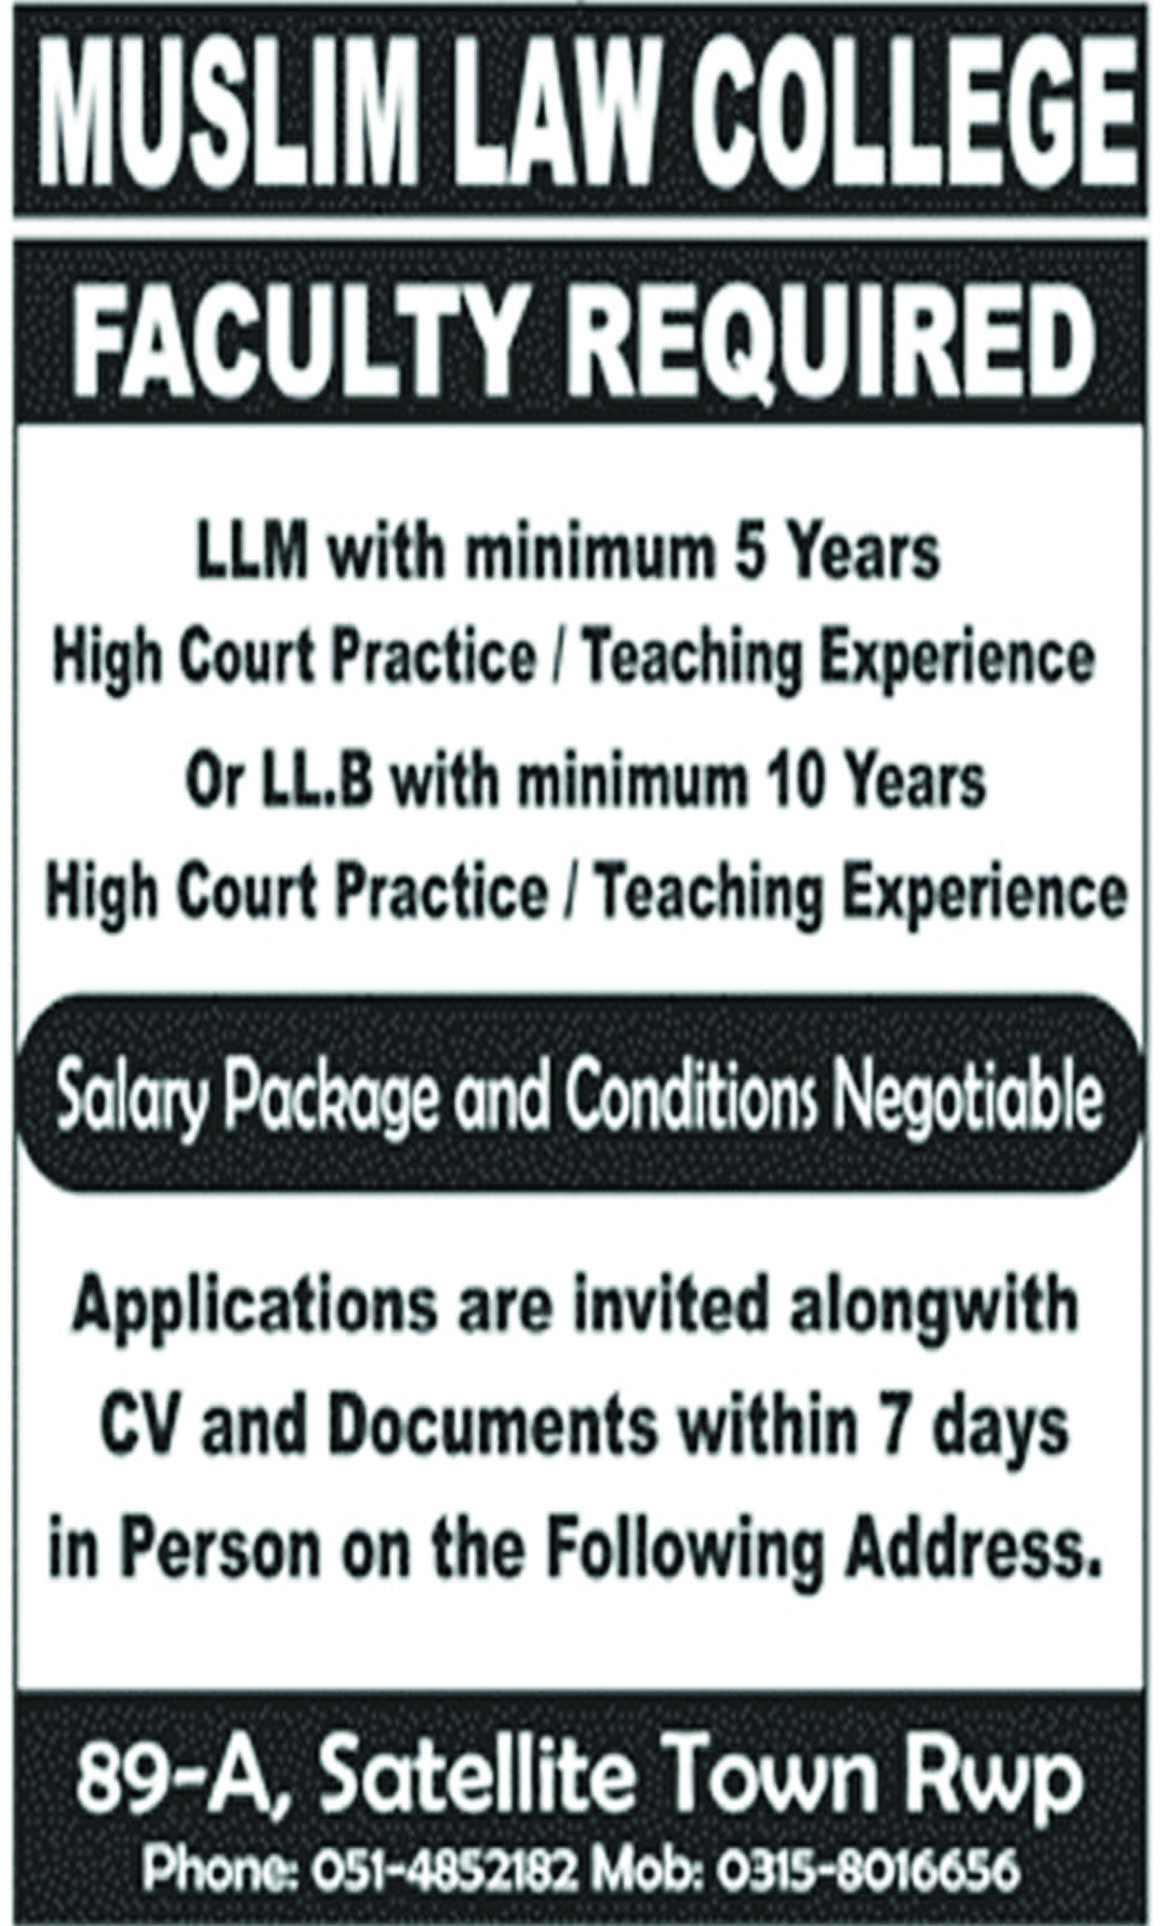 Jobs In Muslim Law College 05 Sep 2018